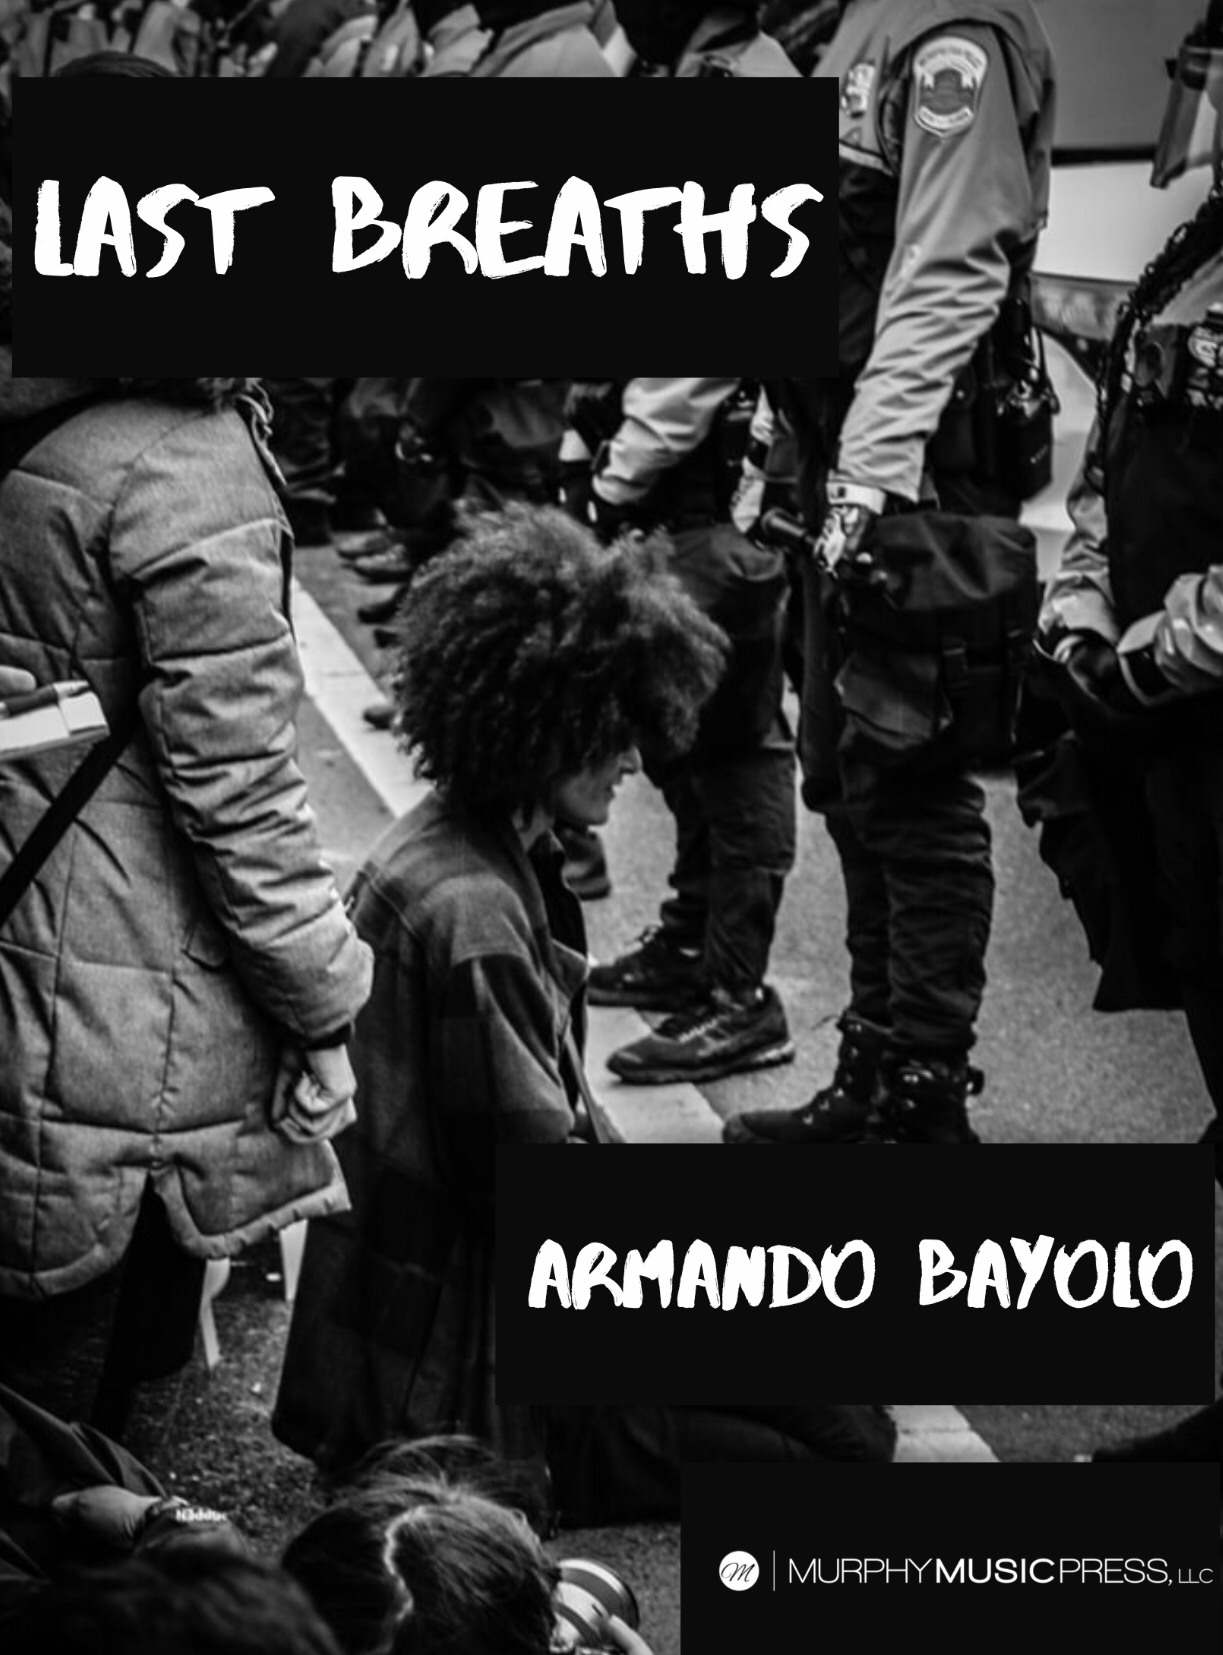 Last Breaths by Armando Bayolo